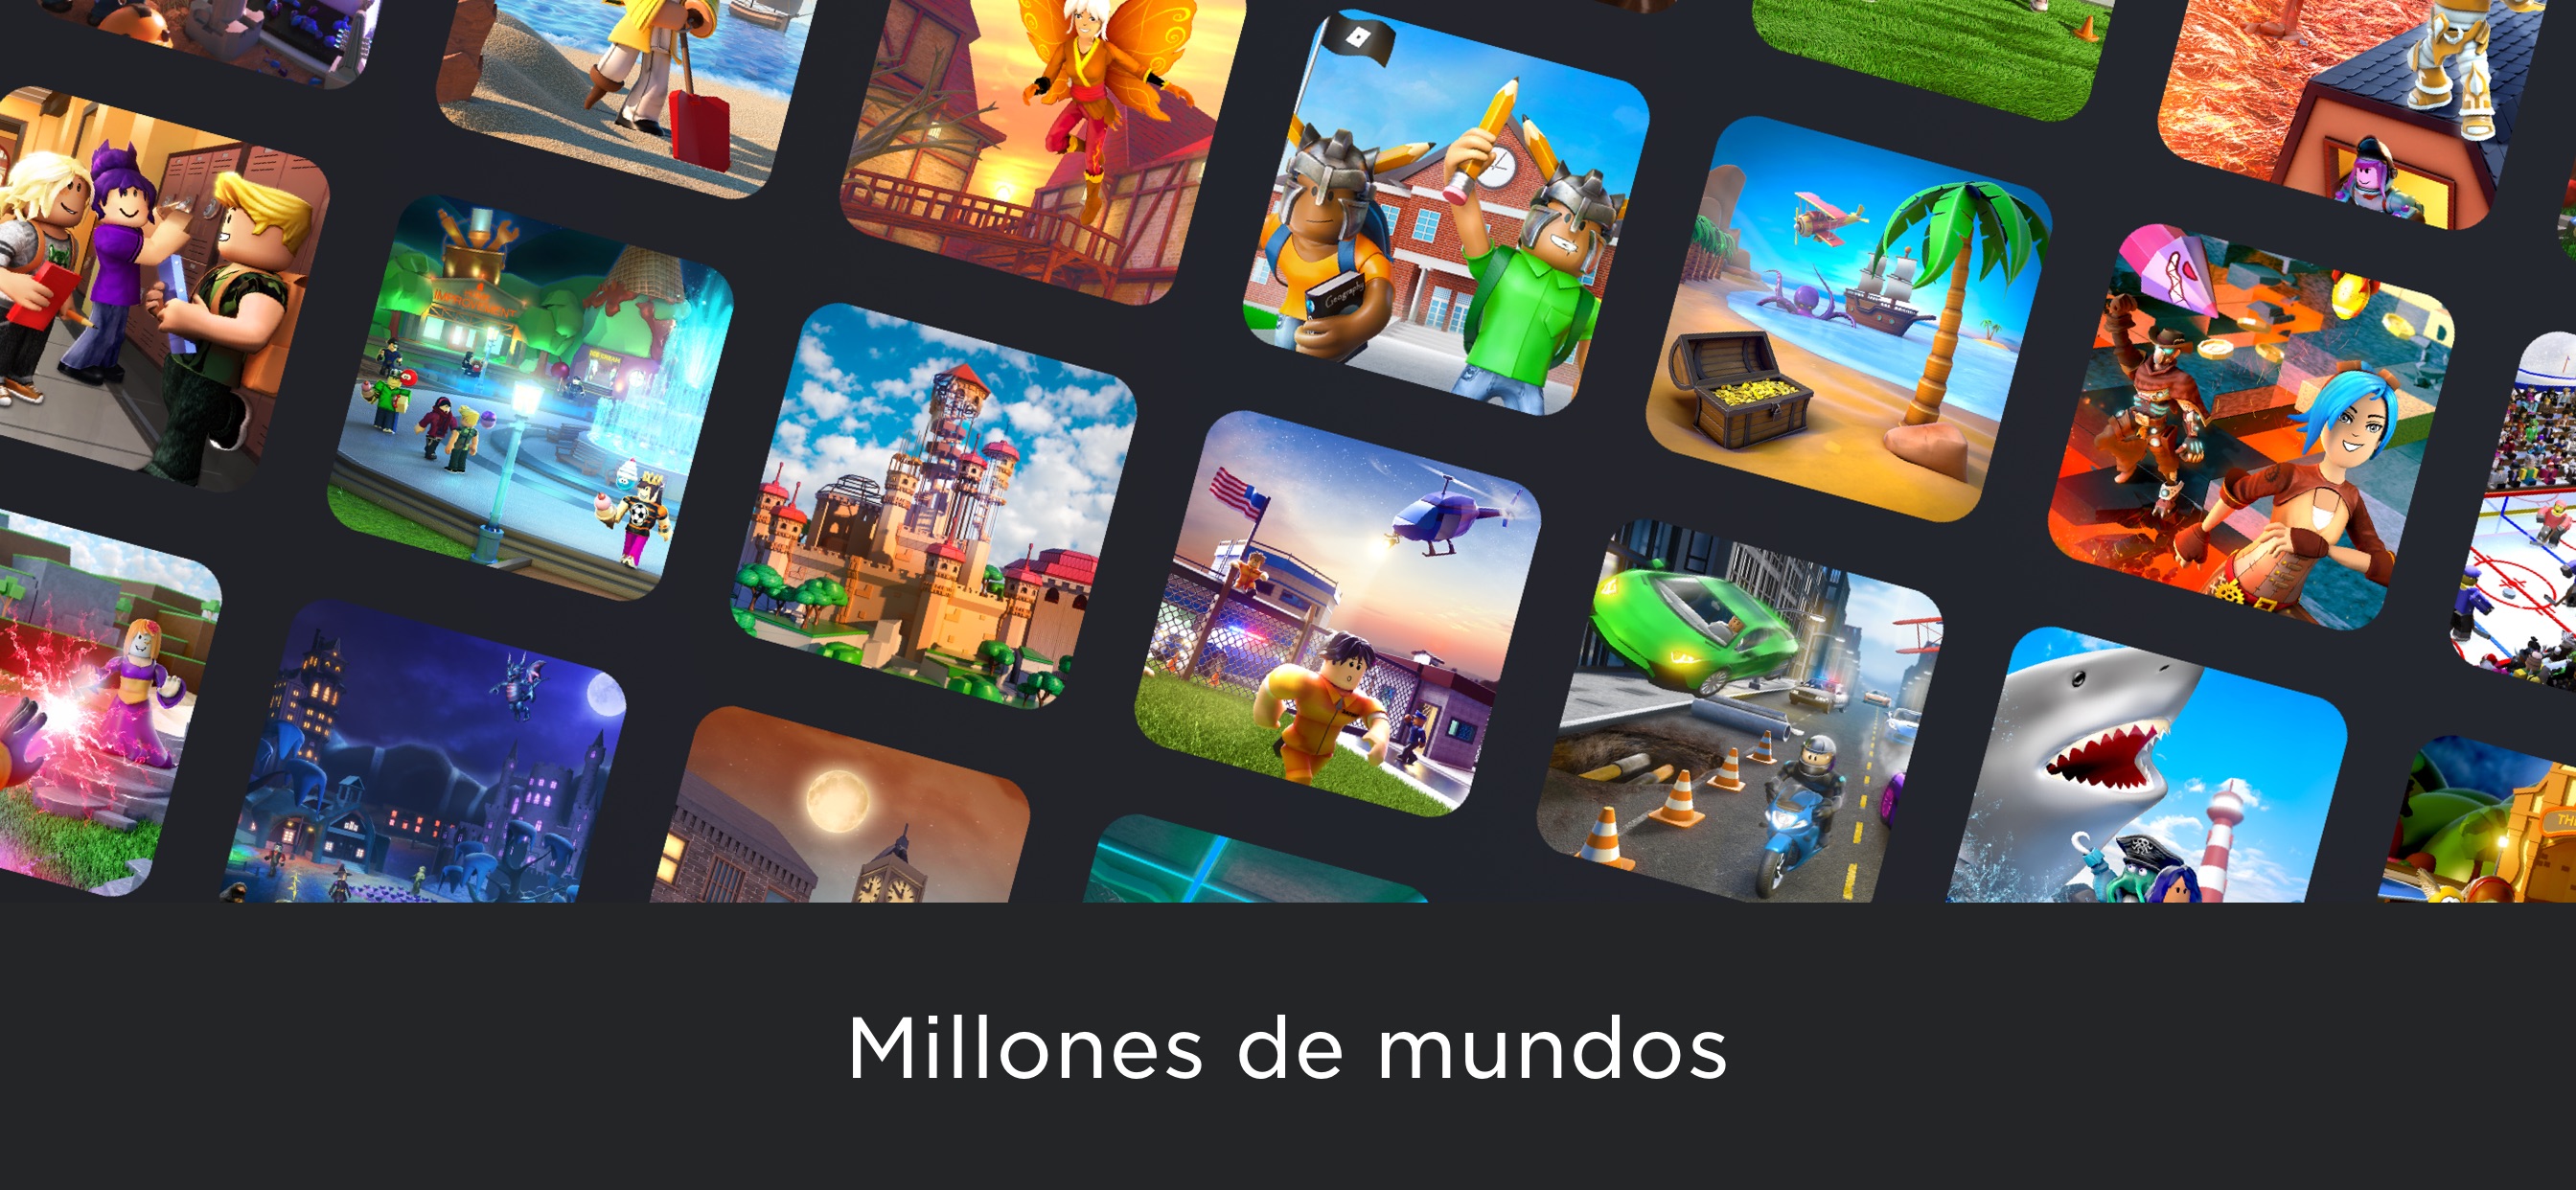 Roblox App Store Review Aso Revenue Downloads Appfollow - mas y mas caras v roblox